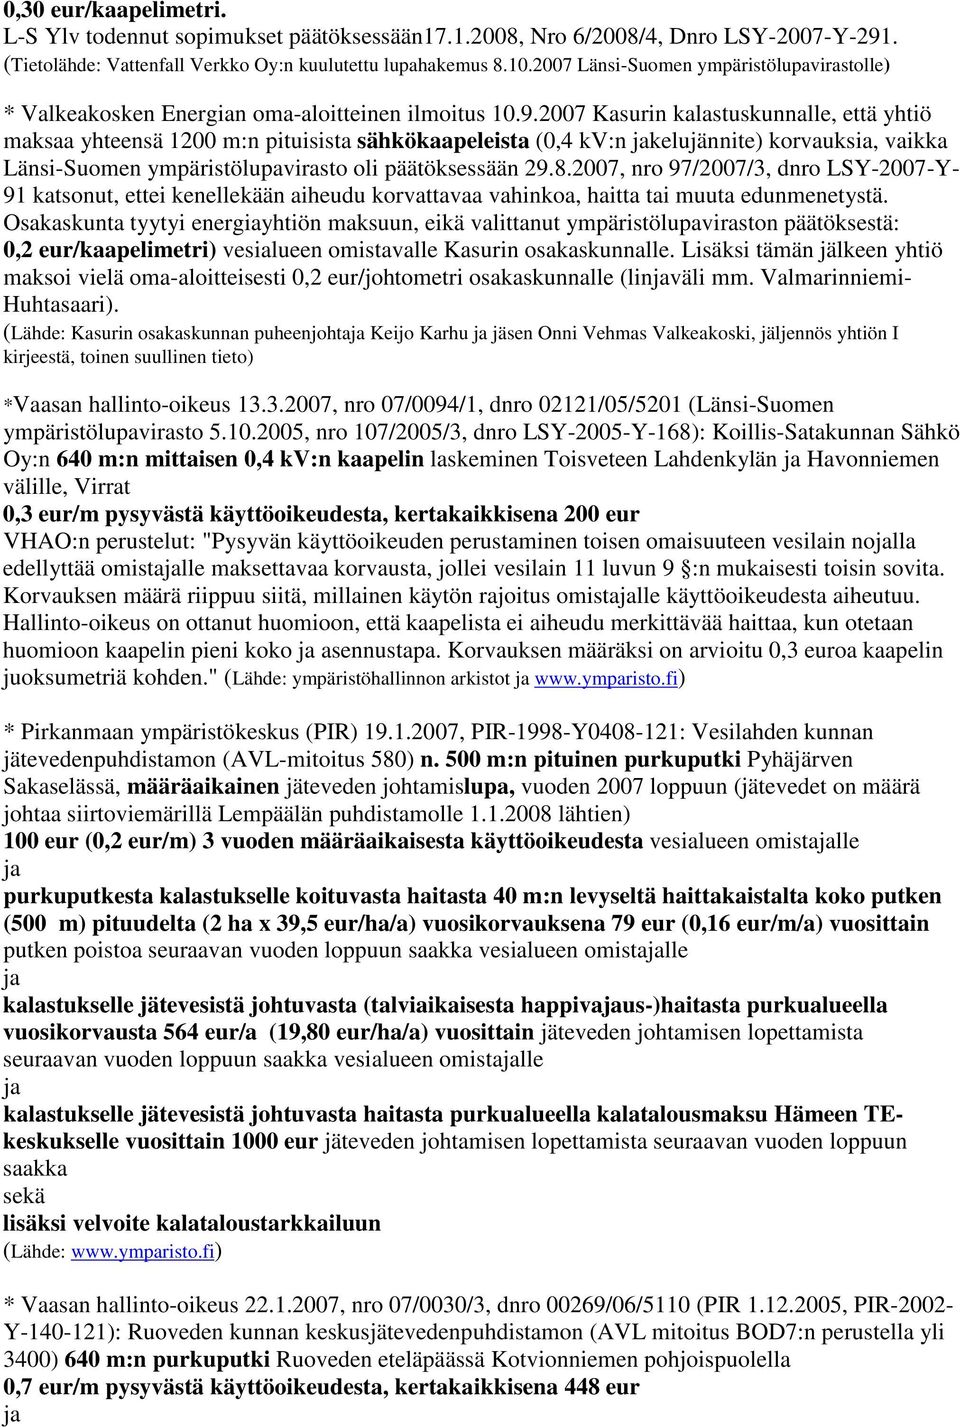 2007 Kasurin kalastuskunnalle, että yhtiö maksaa yhteensä 1200 m:n pituisista sähkökaapeleista (0,4 kv:n kelujännite) korvauksia, vaikka Länsi-Suomen ympäristölupavirasto oli päätöksessään 29.8.